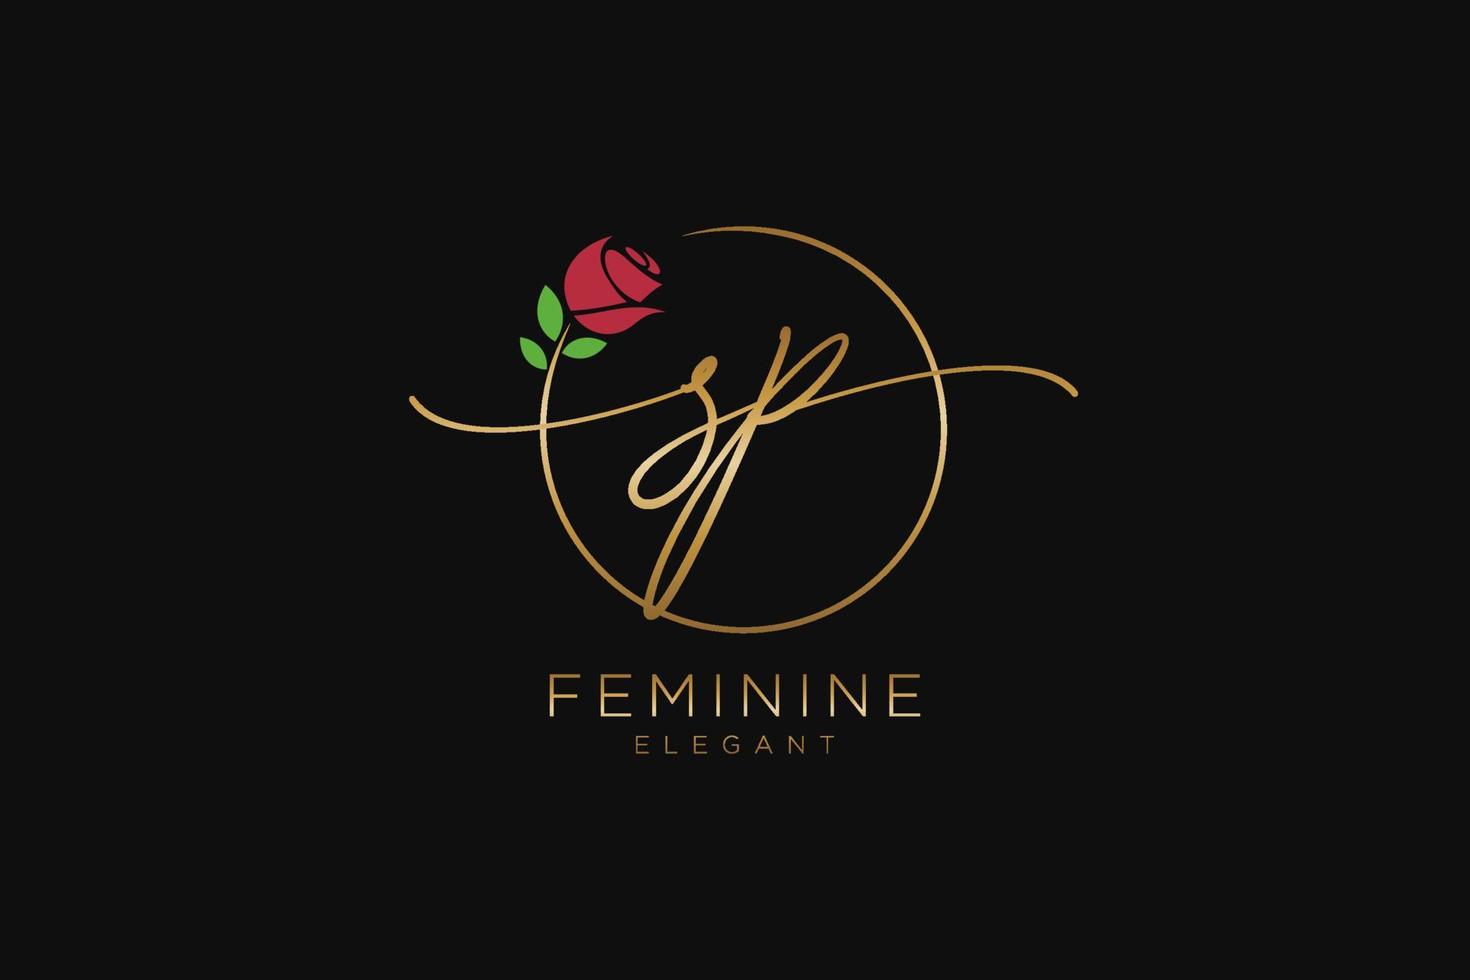 monogramme de beauté du logo féminin initial sp et design élégant du logo, logo manuscrit de la signature initiale, mariage, mode, floral et botanique avec modèle créatif. vecteur